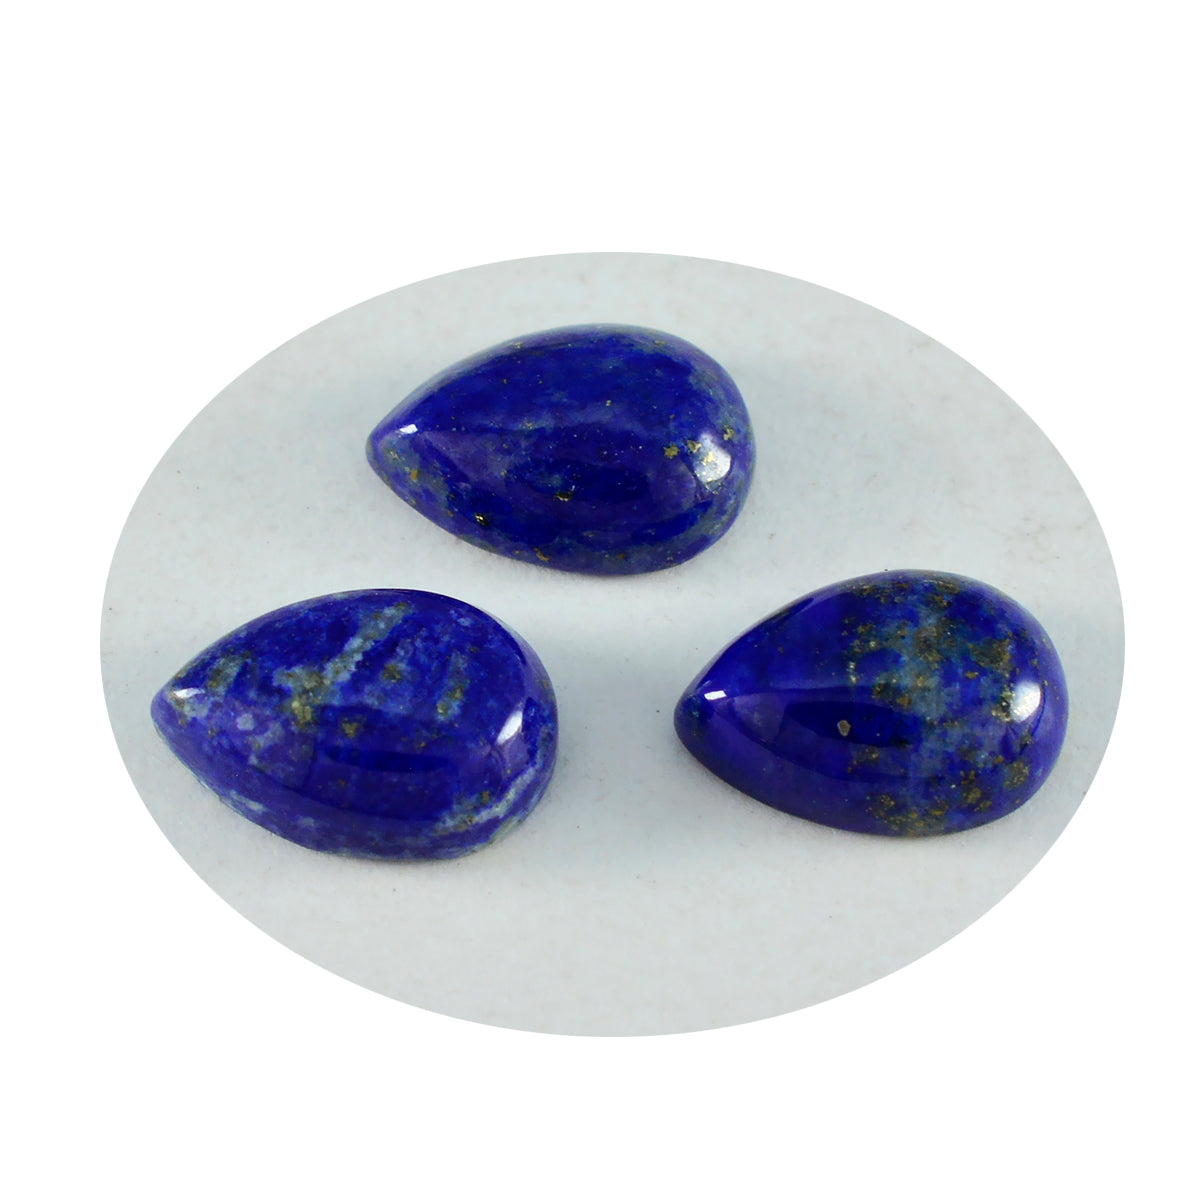 Riyogems 1PC blauwe lapis lazuli cabochon 8x12 mm peervorm mooie kwaliteit losse edelsteen